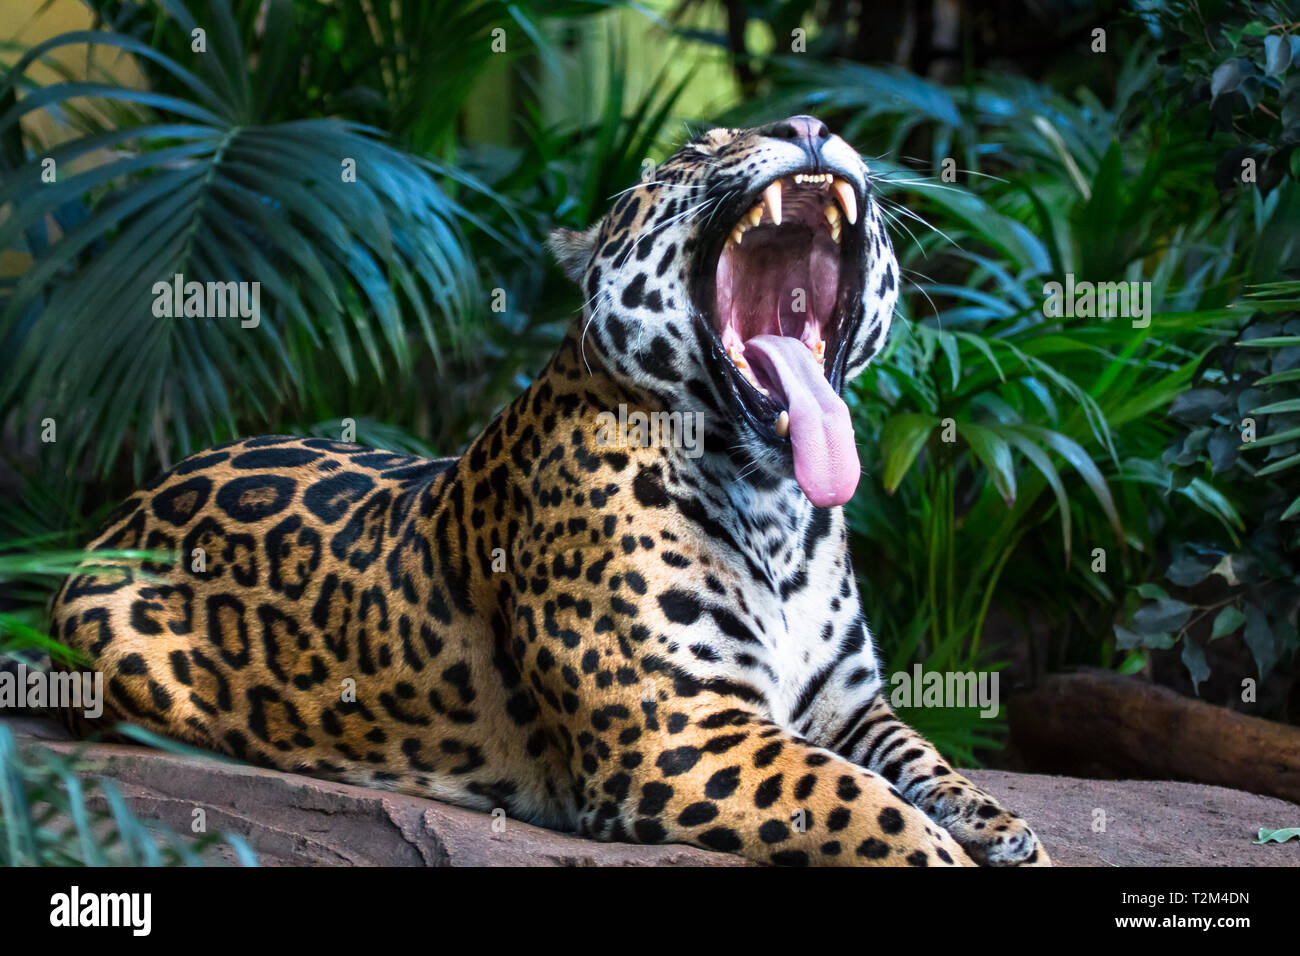 Ein erwachsener Jaguar (Panthera onca) unter Dschungel Vegetation gähnt, enthüllt eine rosa Zunge und massive Zähne. Stockfoto